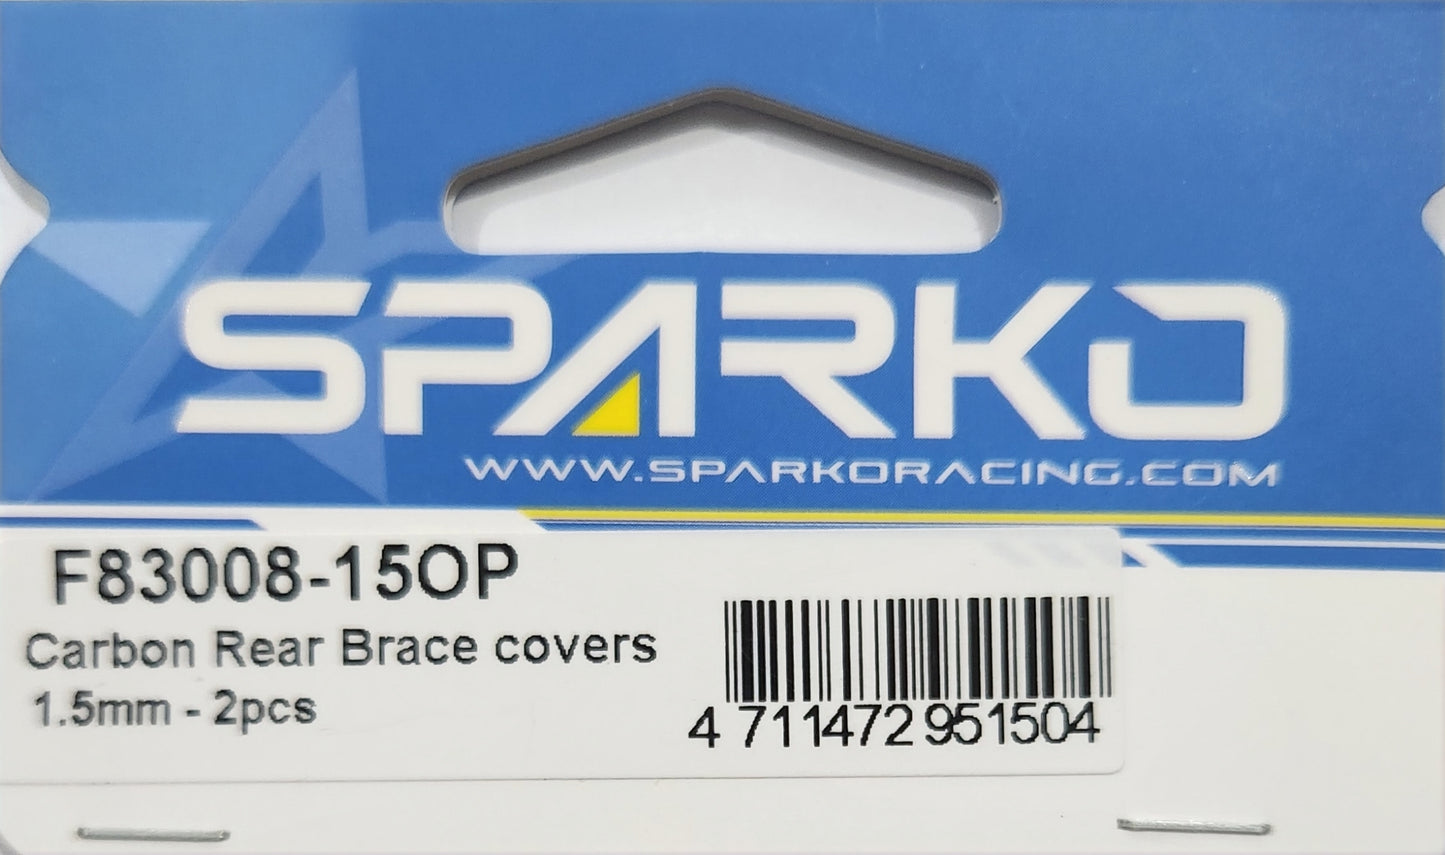 Sparko Racing Carbon Rear Brace covers 1.5mm - 2pcs